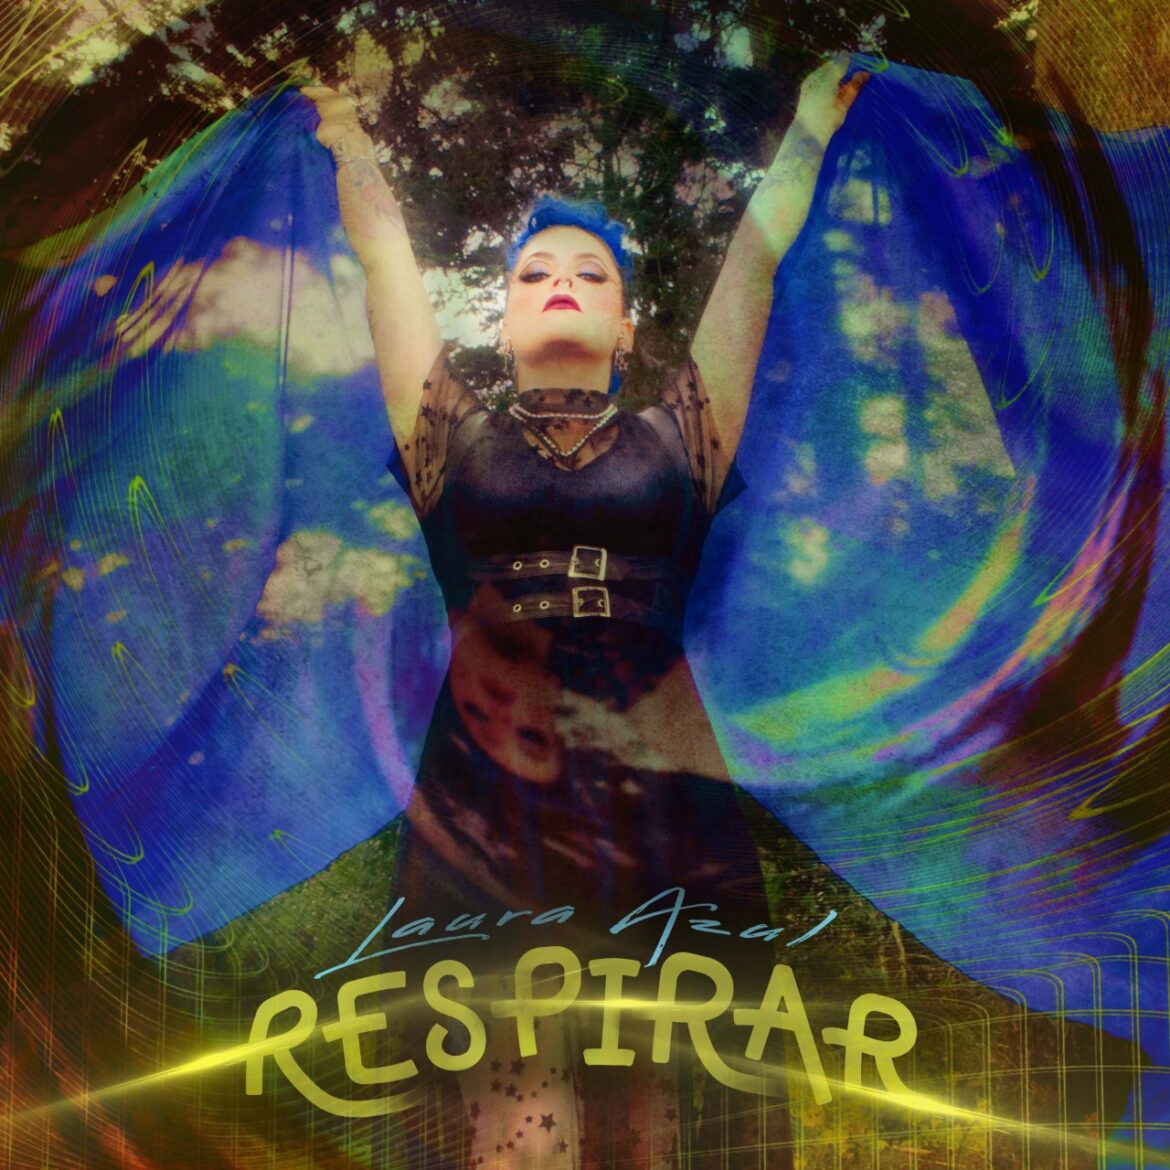 Laura Azul lanza ‘Respirar’, una canción que invita a viajar del caos a la tranquilidad